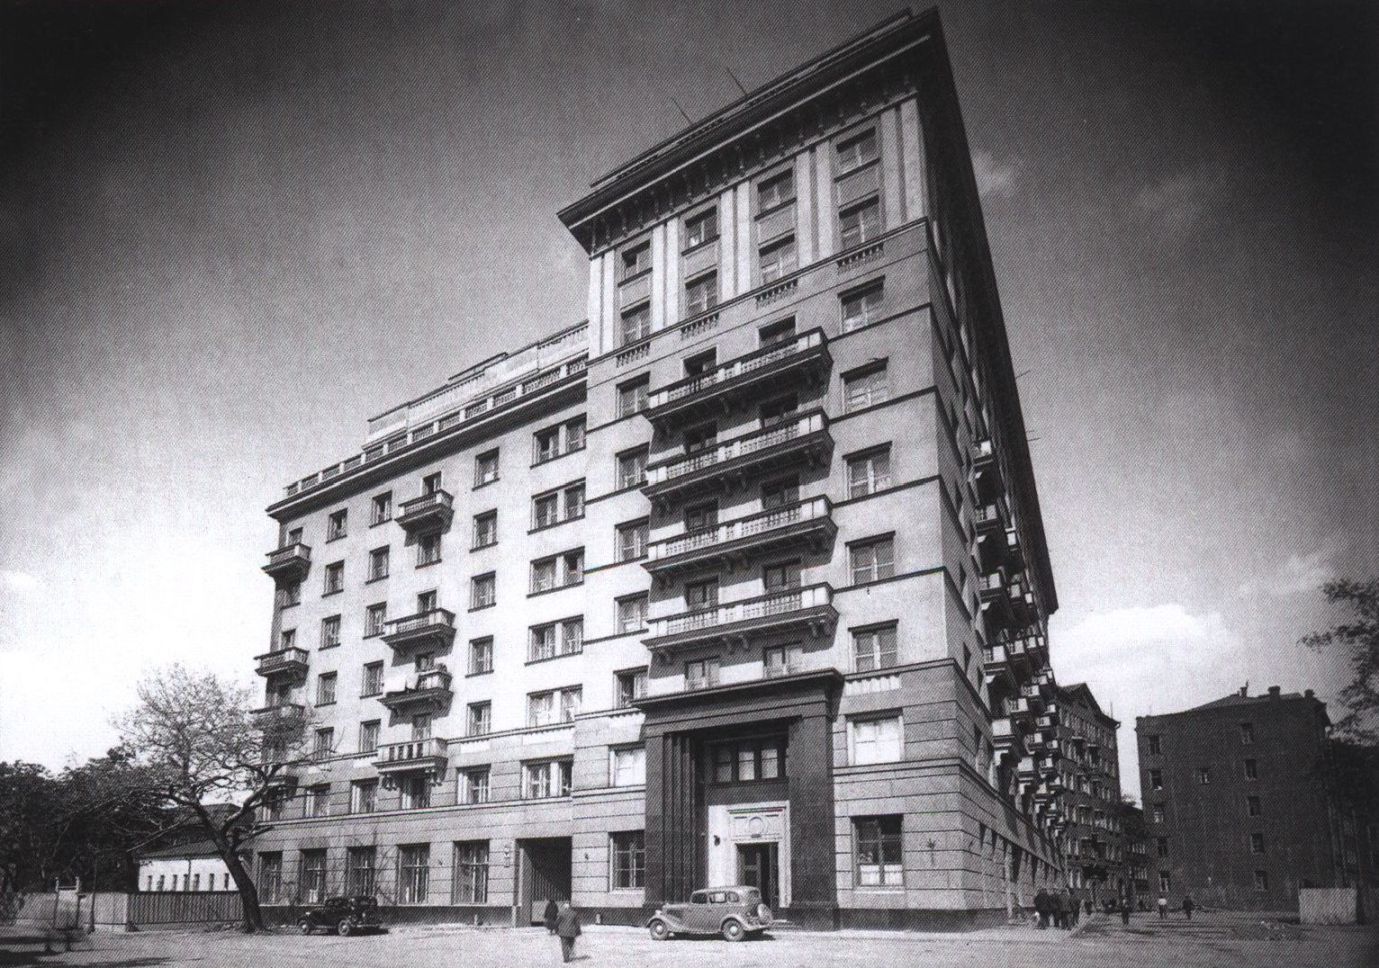 Лаврушинский переулок, дом 17. 1930-е гг. В 1930-х годах участок под строительство высотного здания на месте снесенных флигелей и малоэтажных строений был передан жилищному кооперативу «Советский писатель». Первая очередь дома была сдана в 1937 году (архитектор И.Н. Николаев)